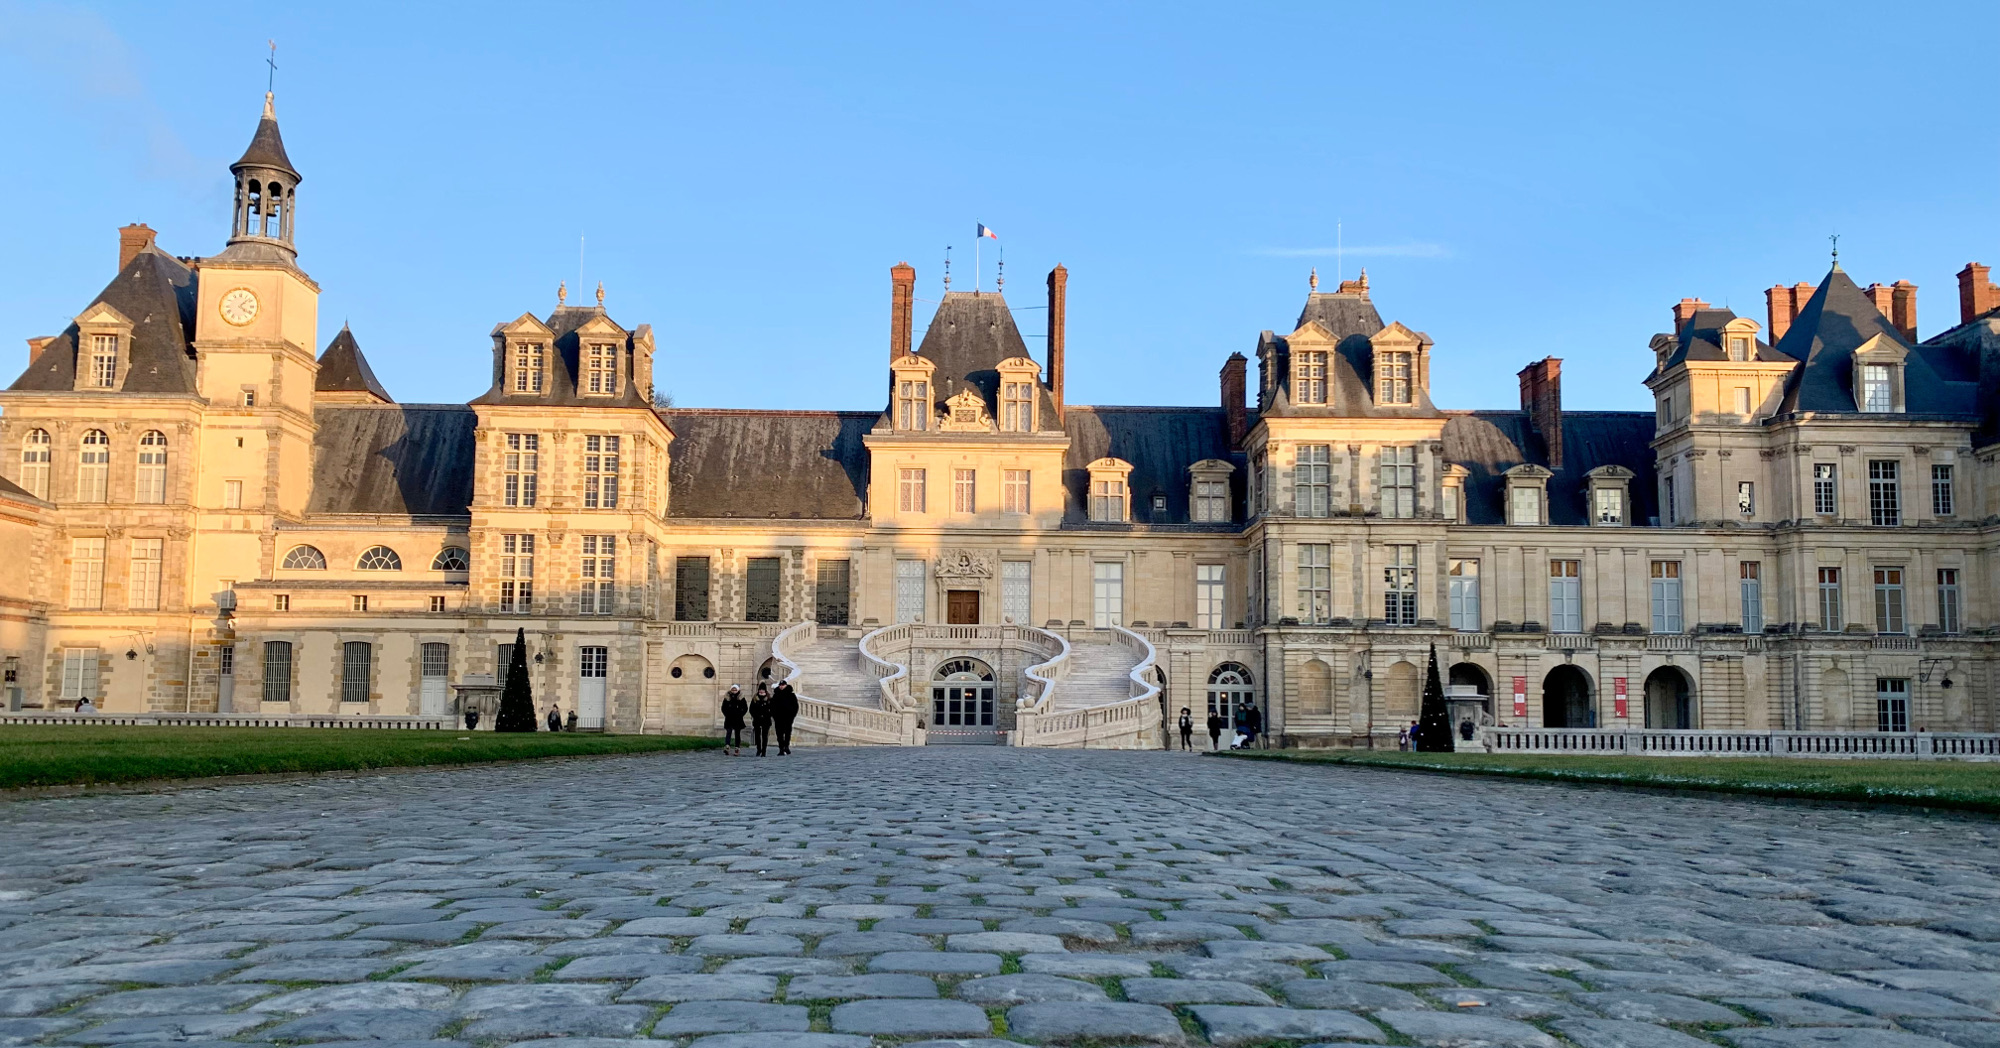 Chasing Napoleon at Château de Fontainebleau • BruceSchinkel